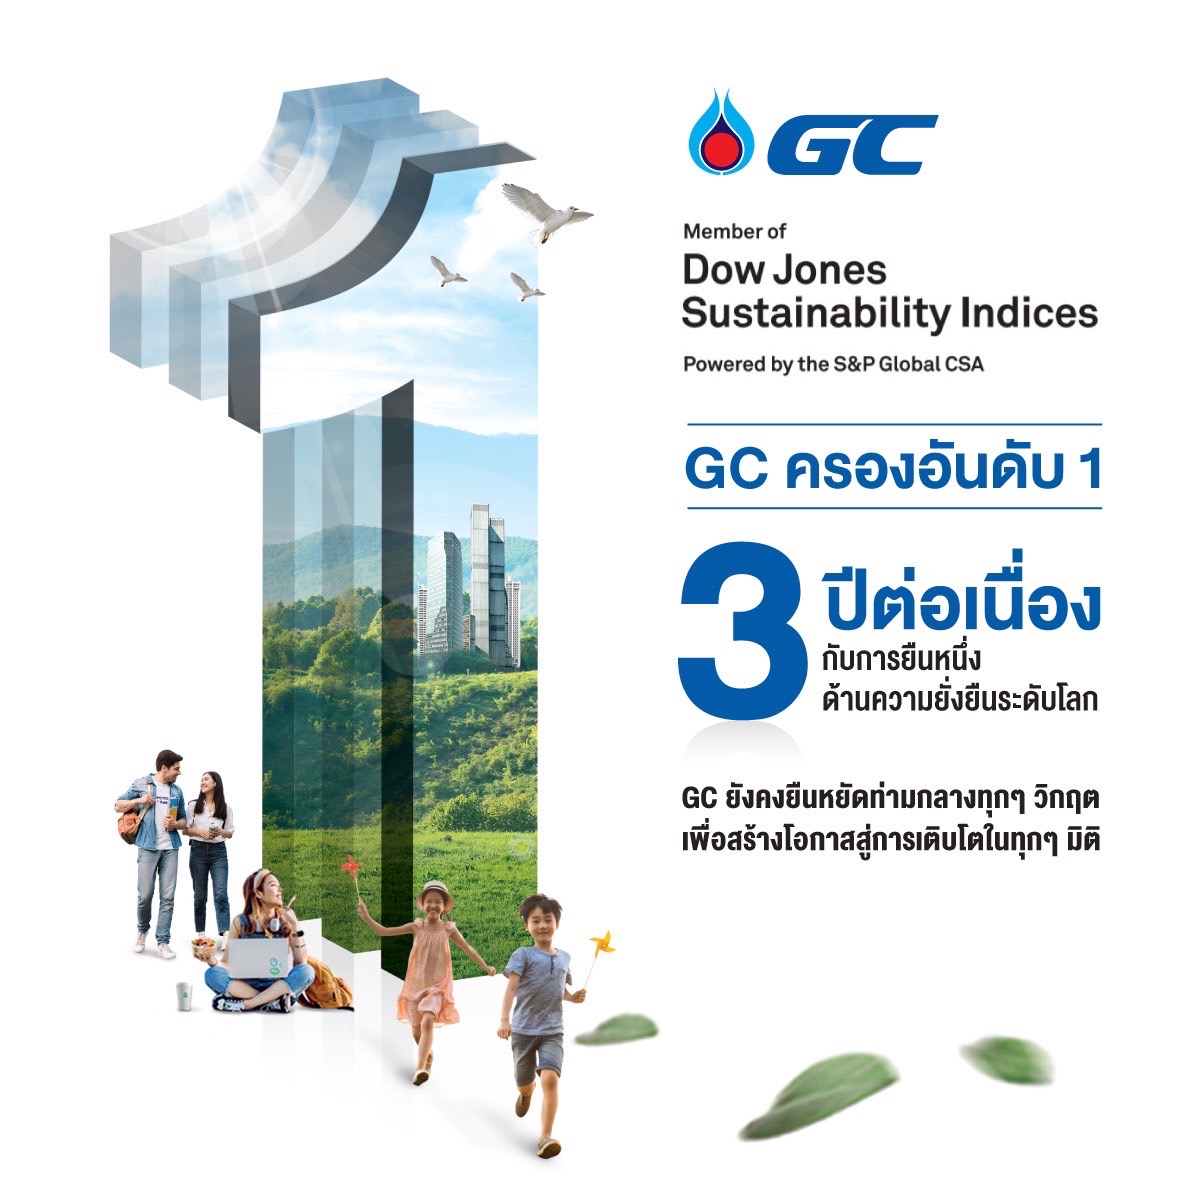 GC บริษัทปิโตรเคมีแรกของไทยติดอันดับ 1 ของโลกจาก DJSI   ต่อเนื่อง 3 ปีซ้อนในกลุ่มธุรกิจเคมีภัณฑ์ พร้อมเดินหน้าสู่องค์กร Net Zero